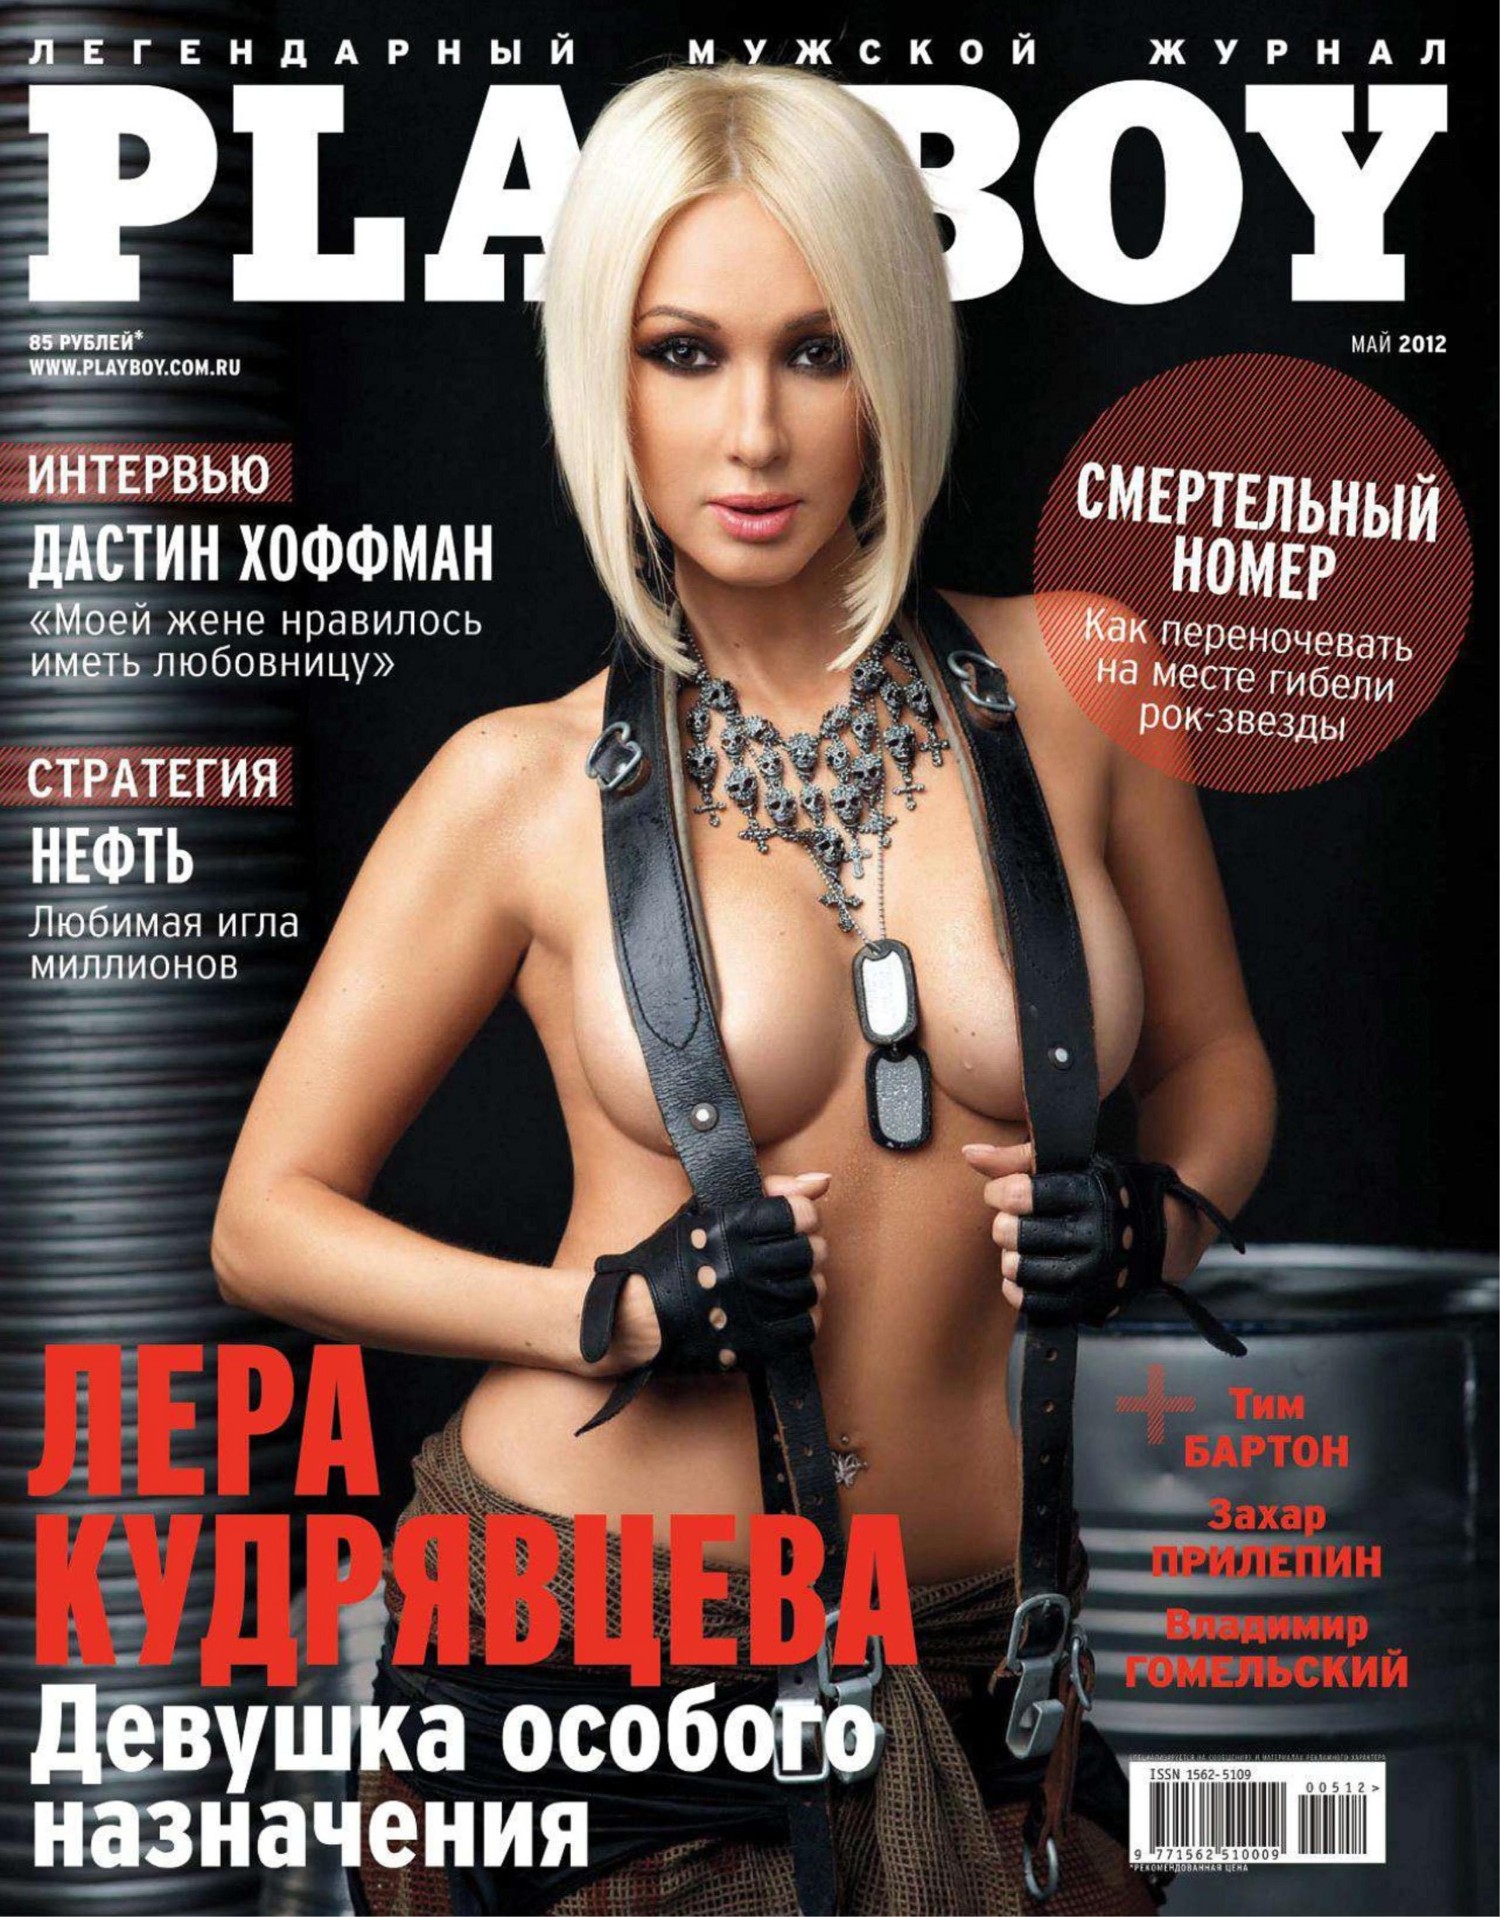 Самые горячие девушки января за всю историю журнала Playboy